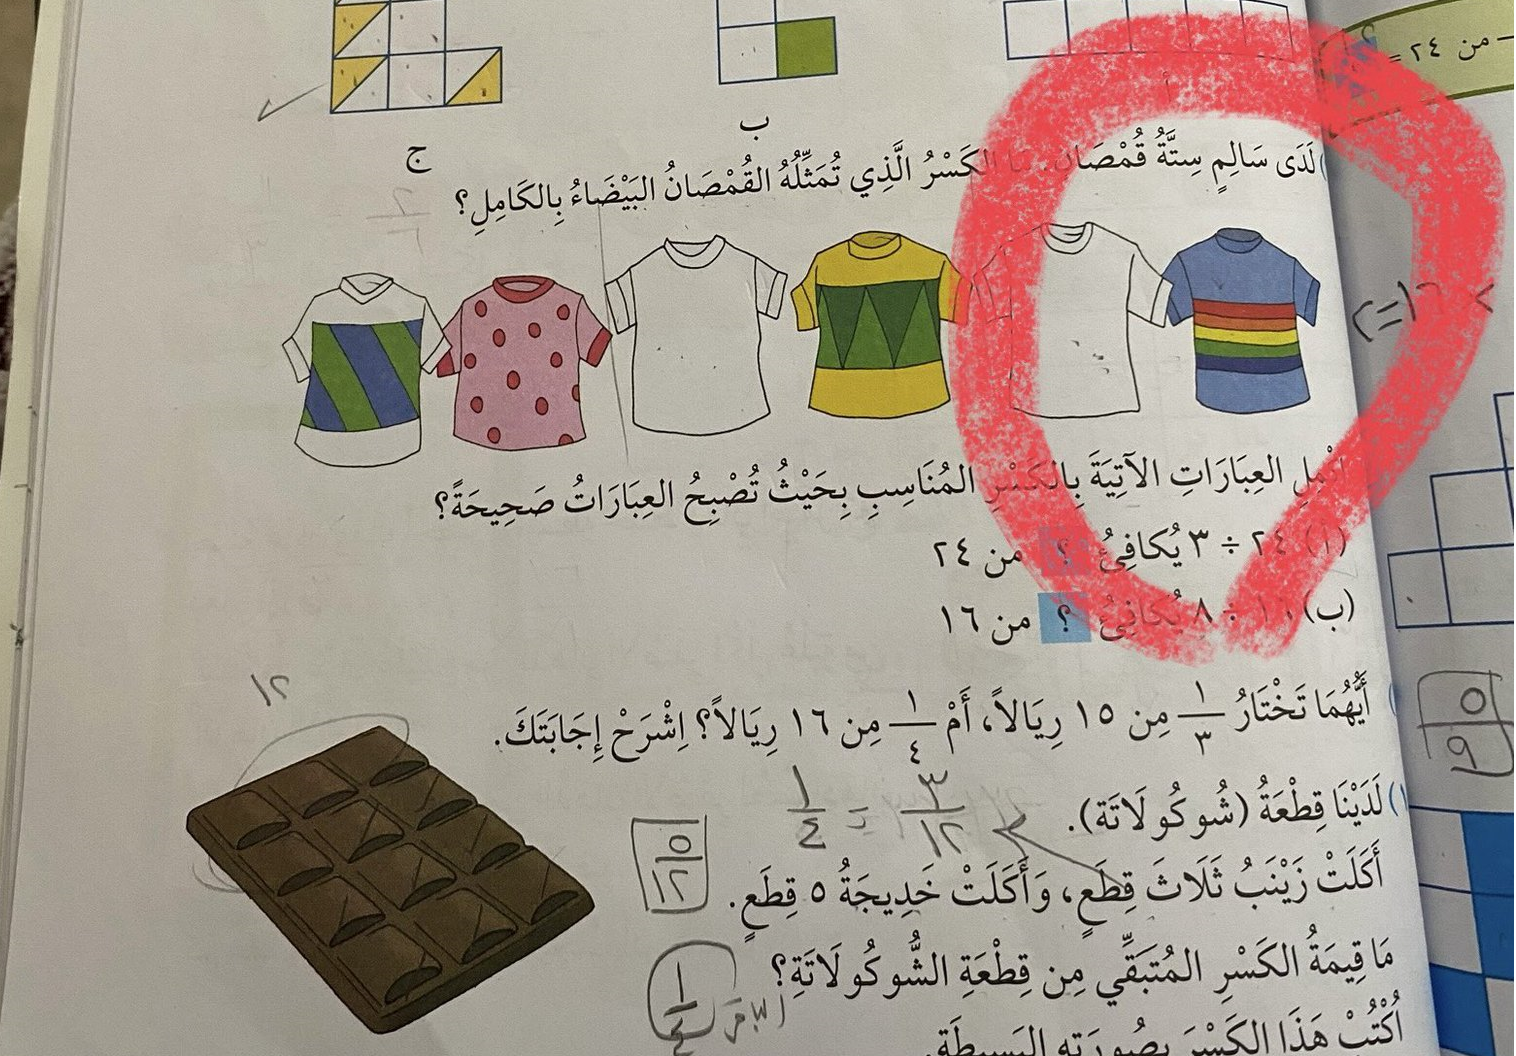 صورة في كتاب مدرسي تثير حفيظة العمانيين.. ما علاقة "علم المثليين"؟